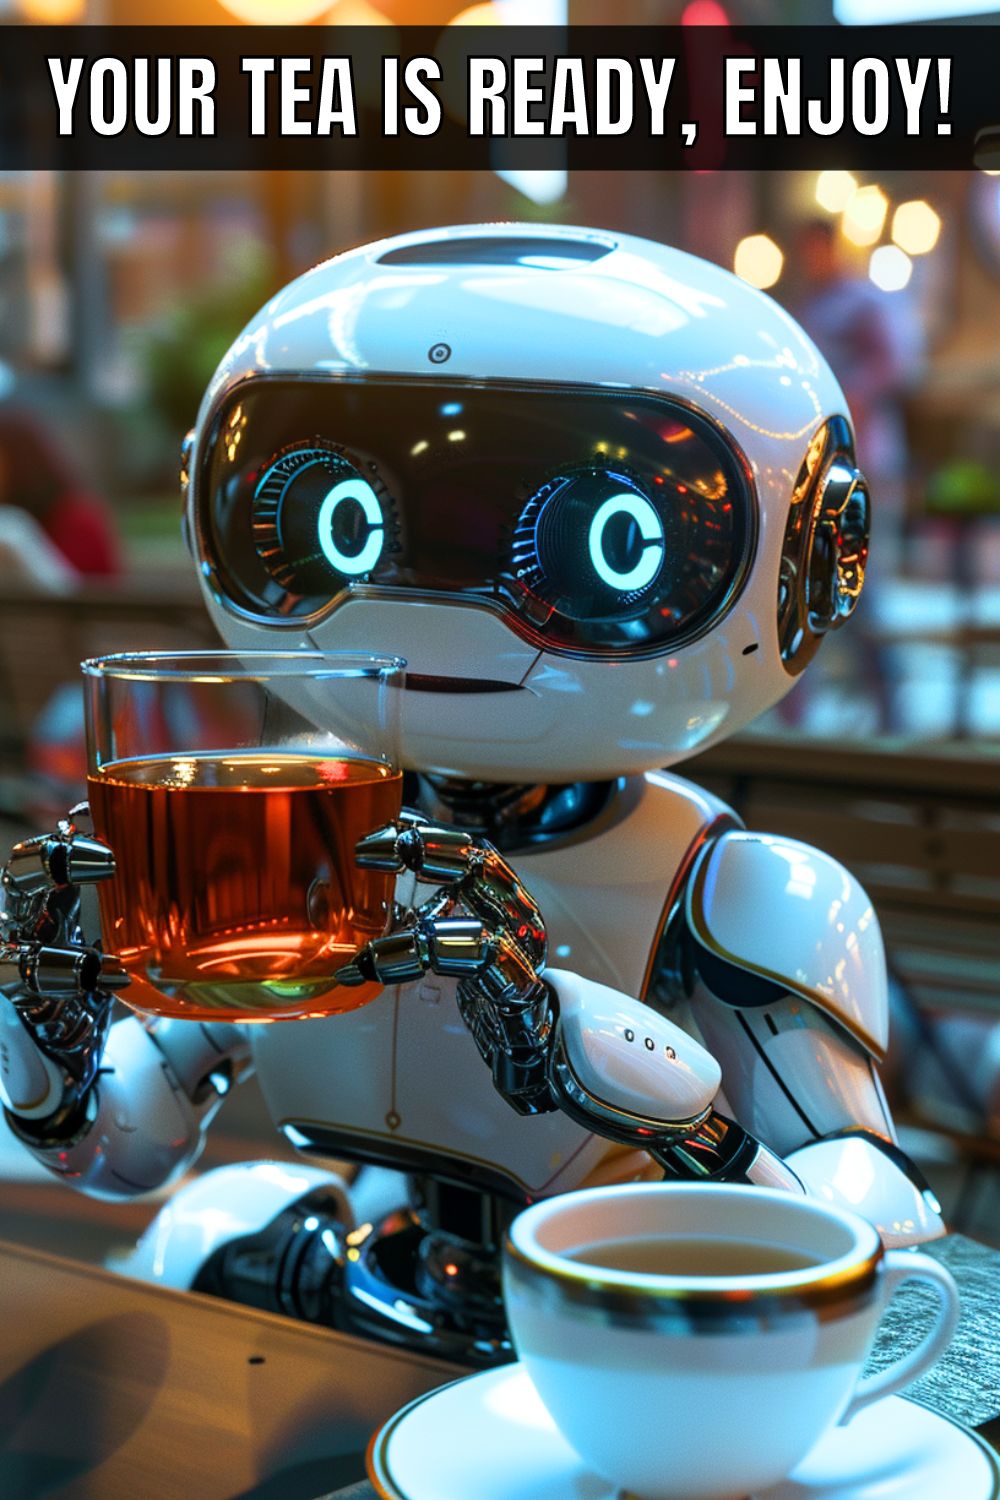 the future of tea: a robot serving a cup of tea